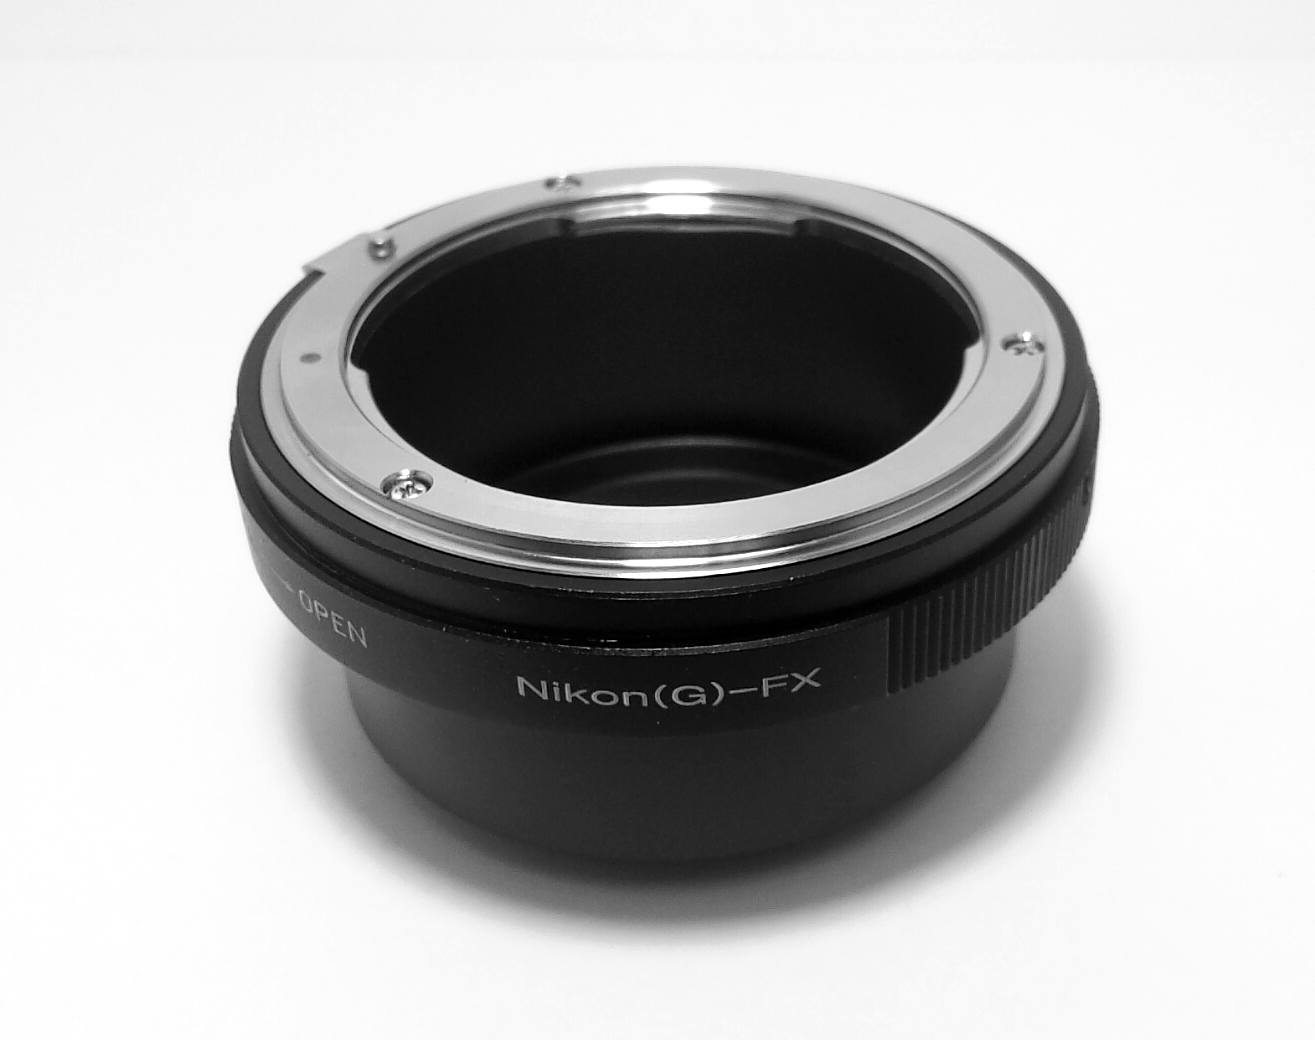 Nikon G lens To Fujifilm FX Body